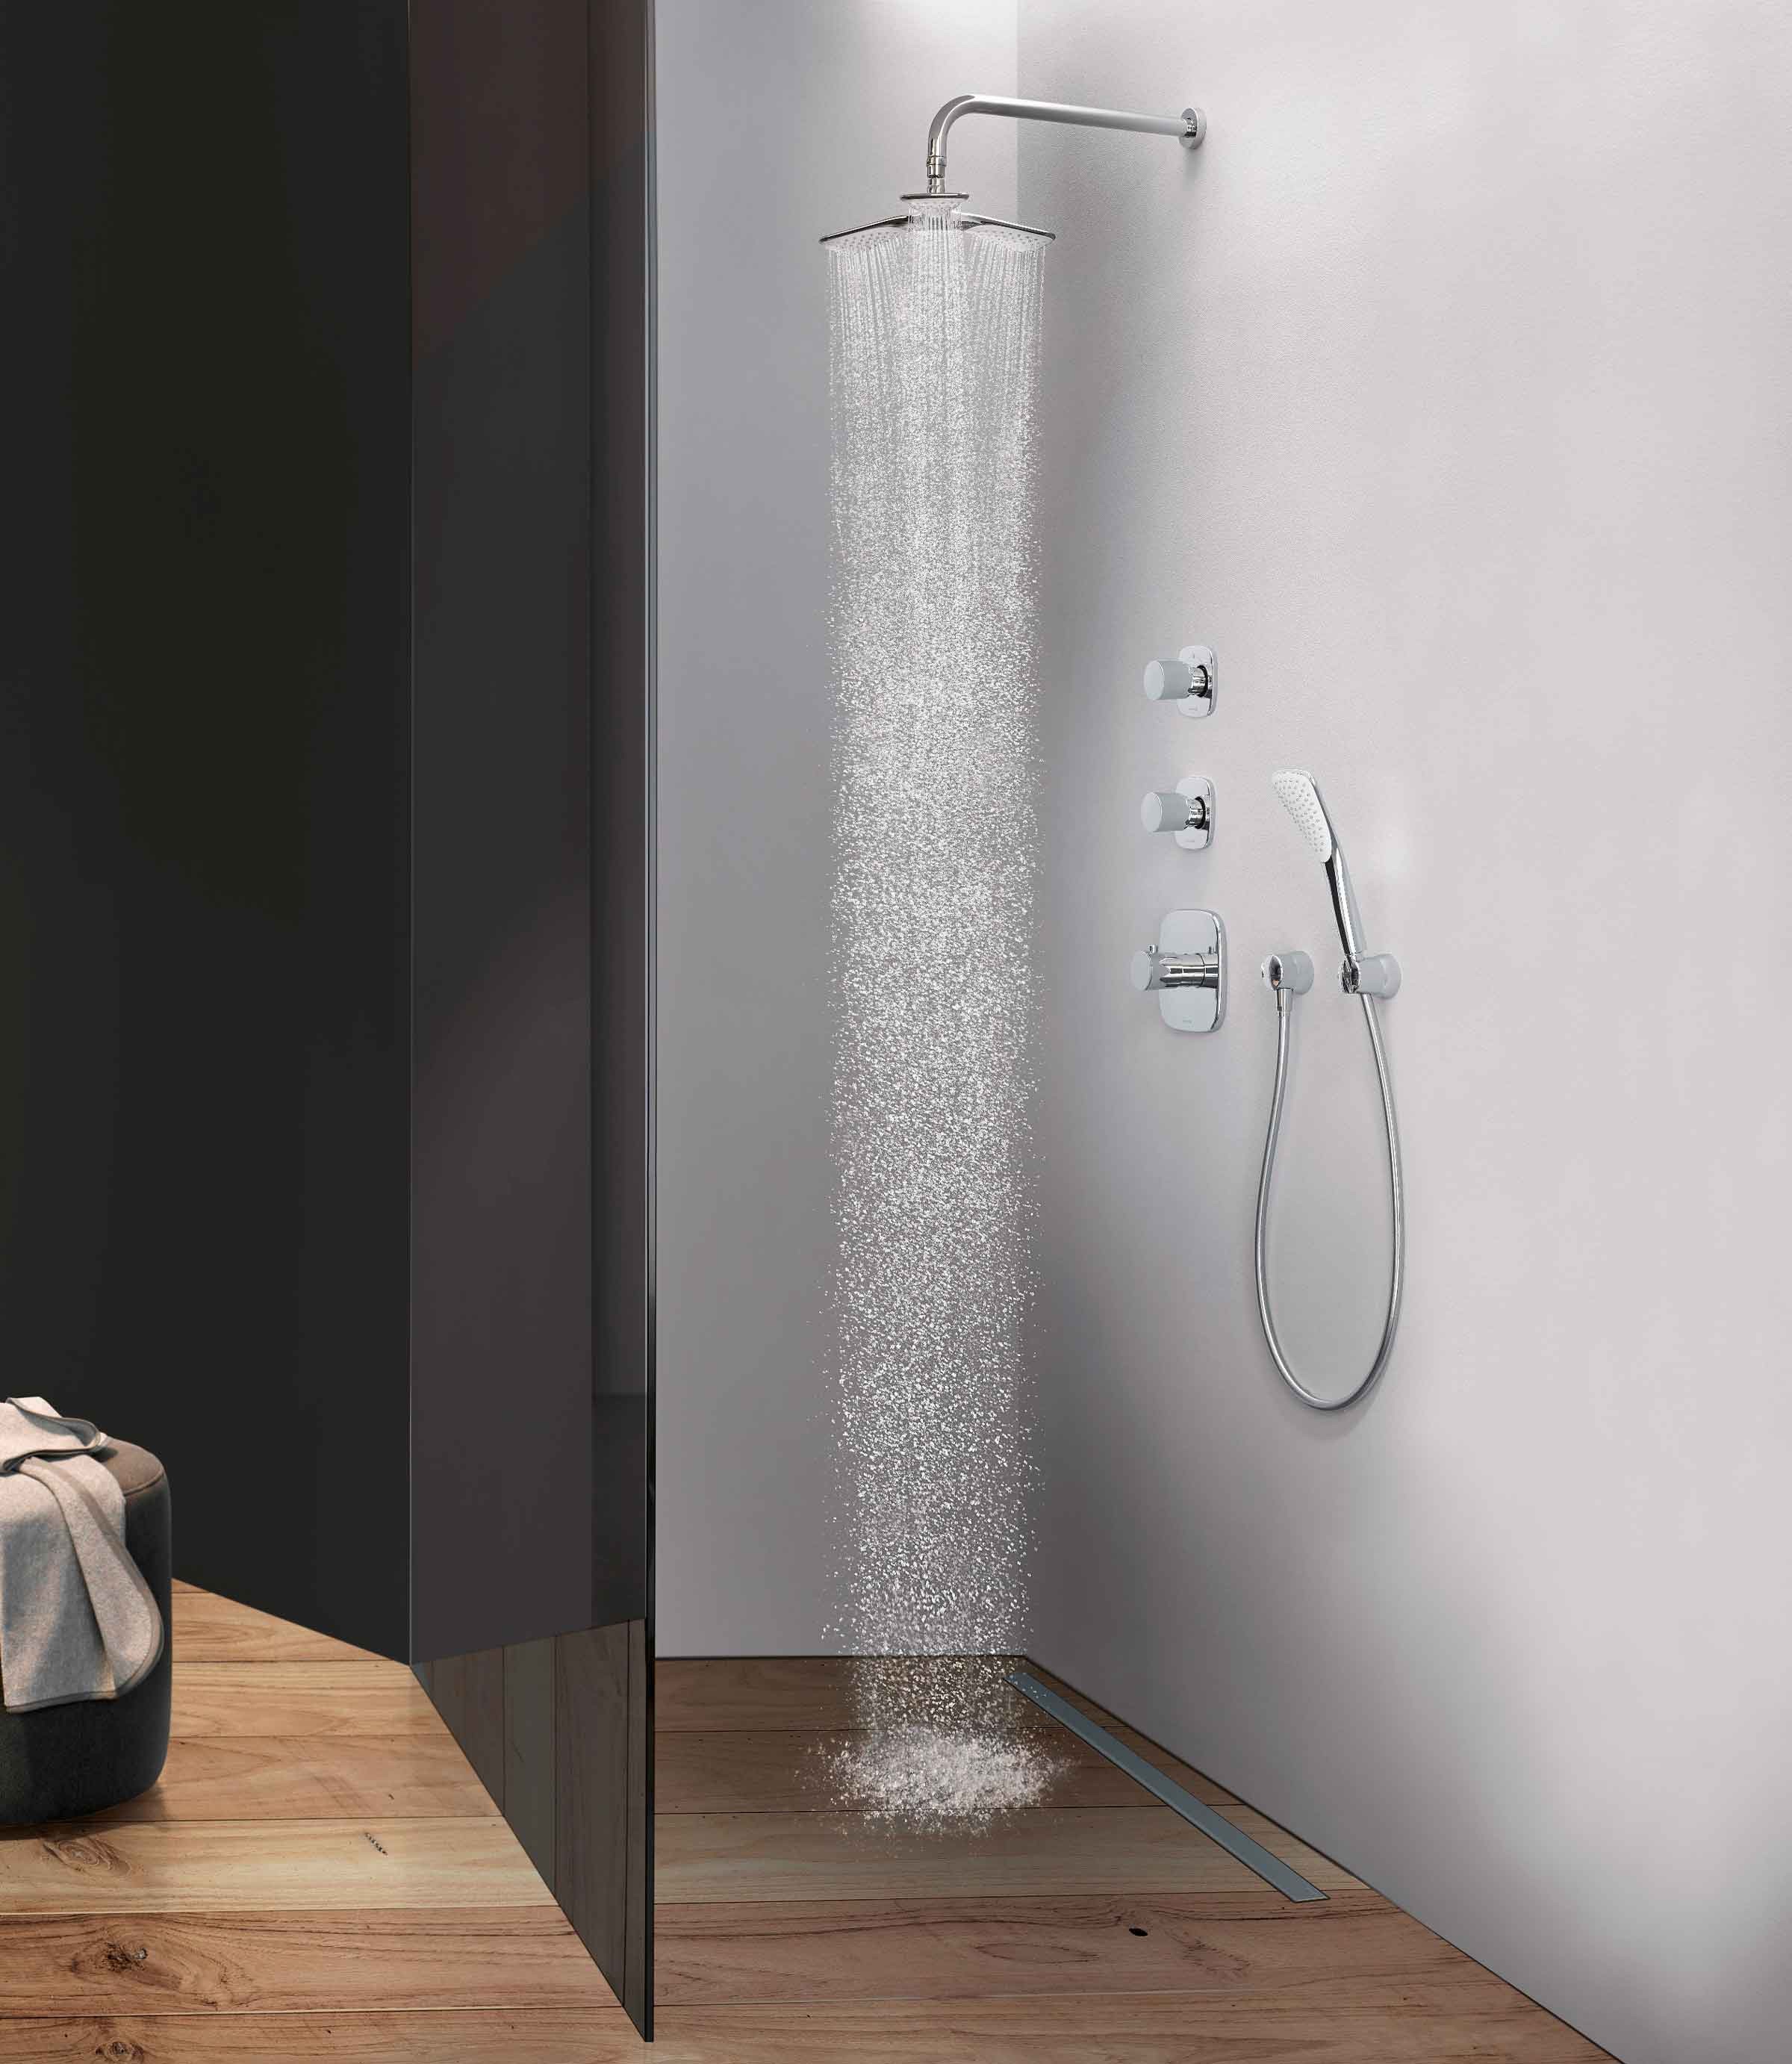 Aranżacja łazienki z zastosowaniem produktów podtynkowych serii KLUDI AMBIENTA.